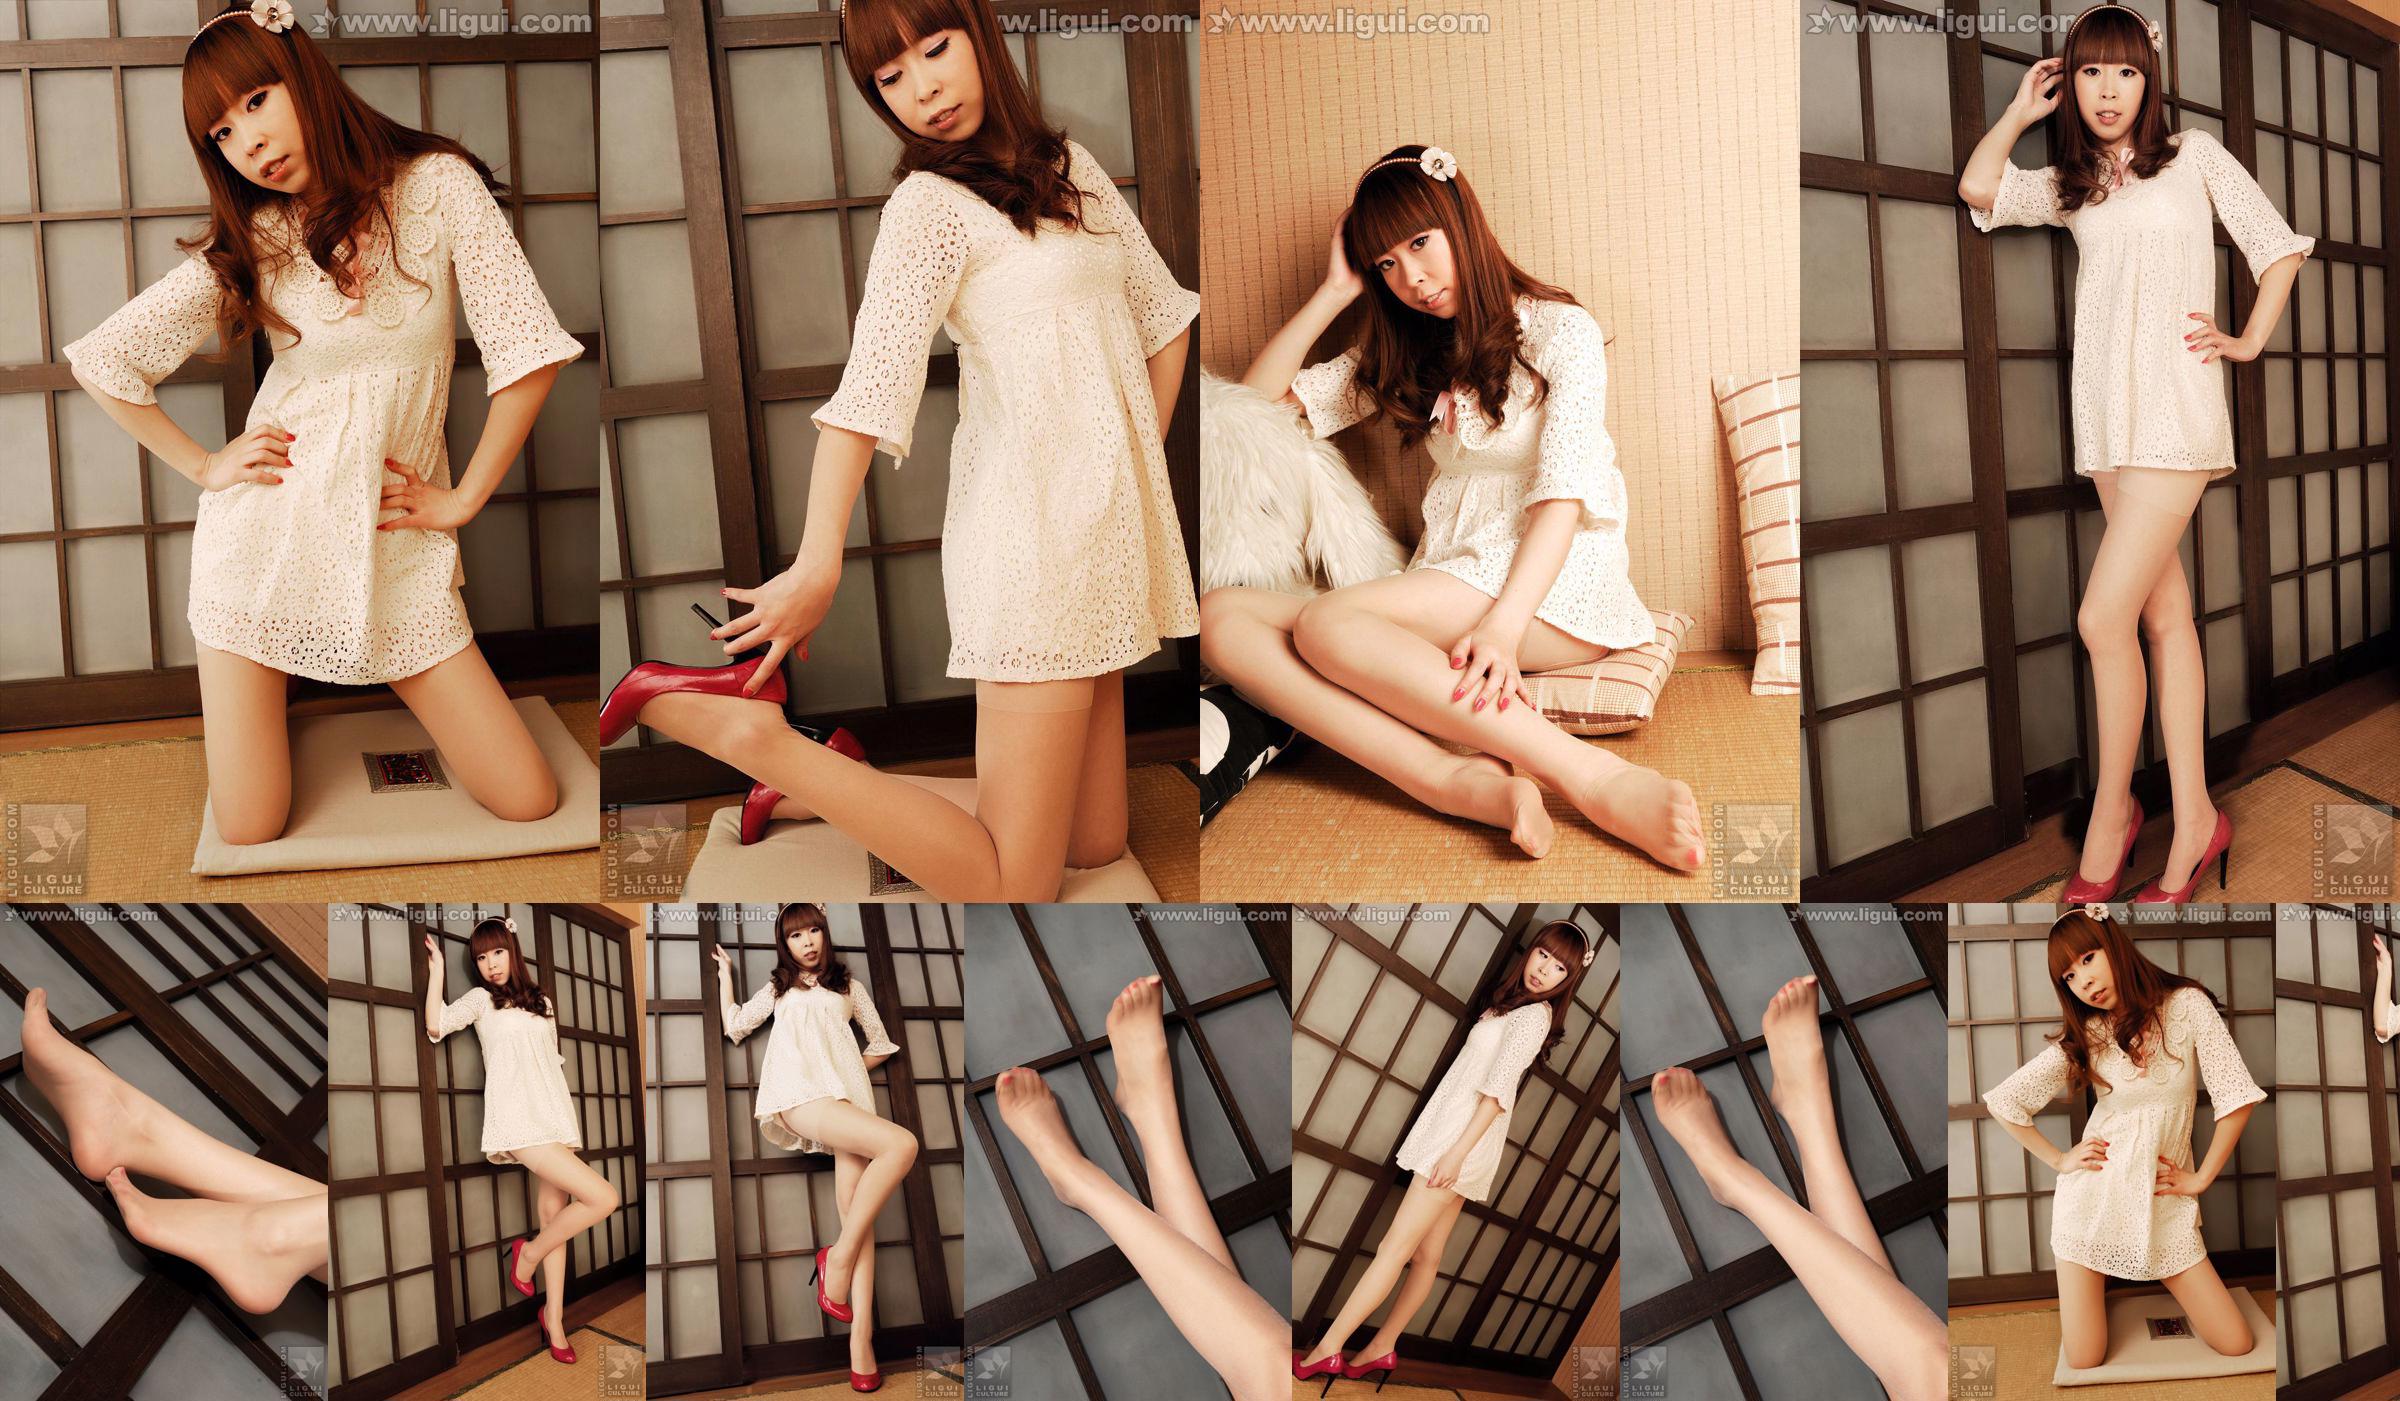 Modelo Vikcy "La tentación del estilo japonés" [丽 柜 LiGui] Fotos de piernas hermosas y pie de jade No.b30fd4 Página 4